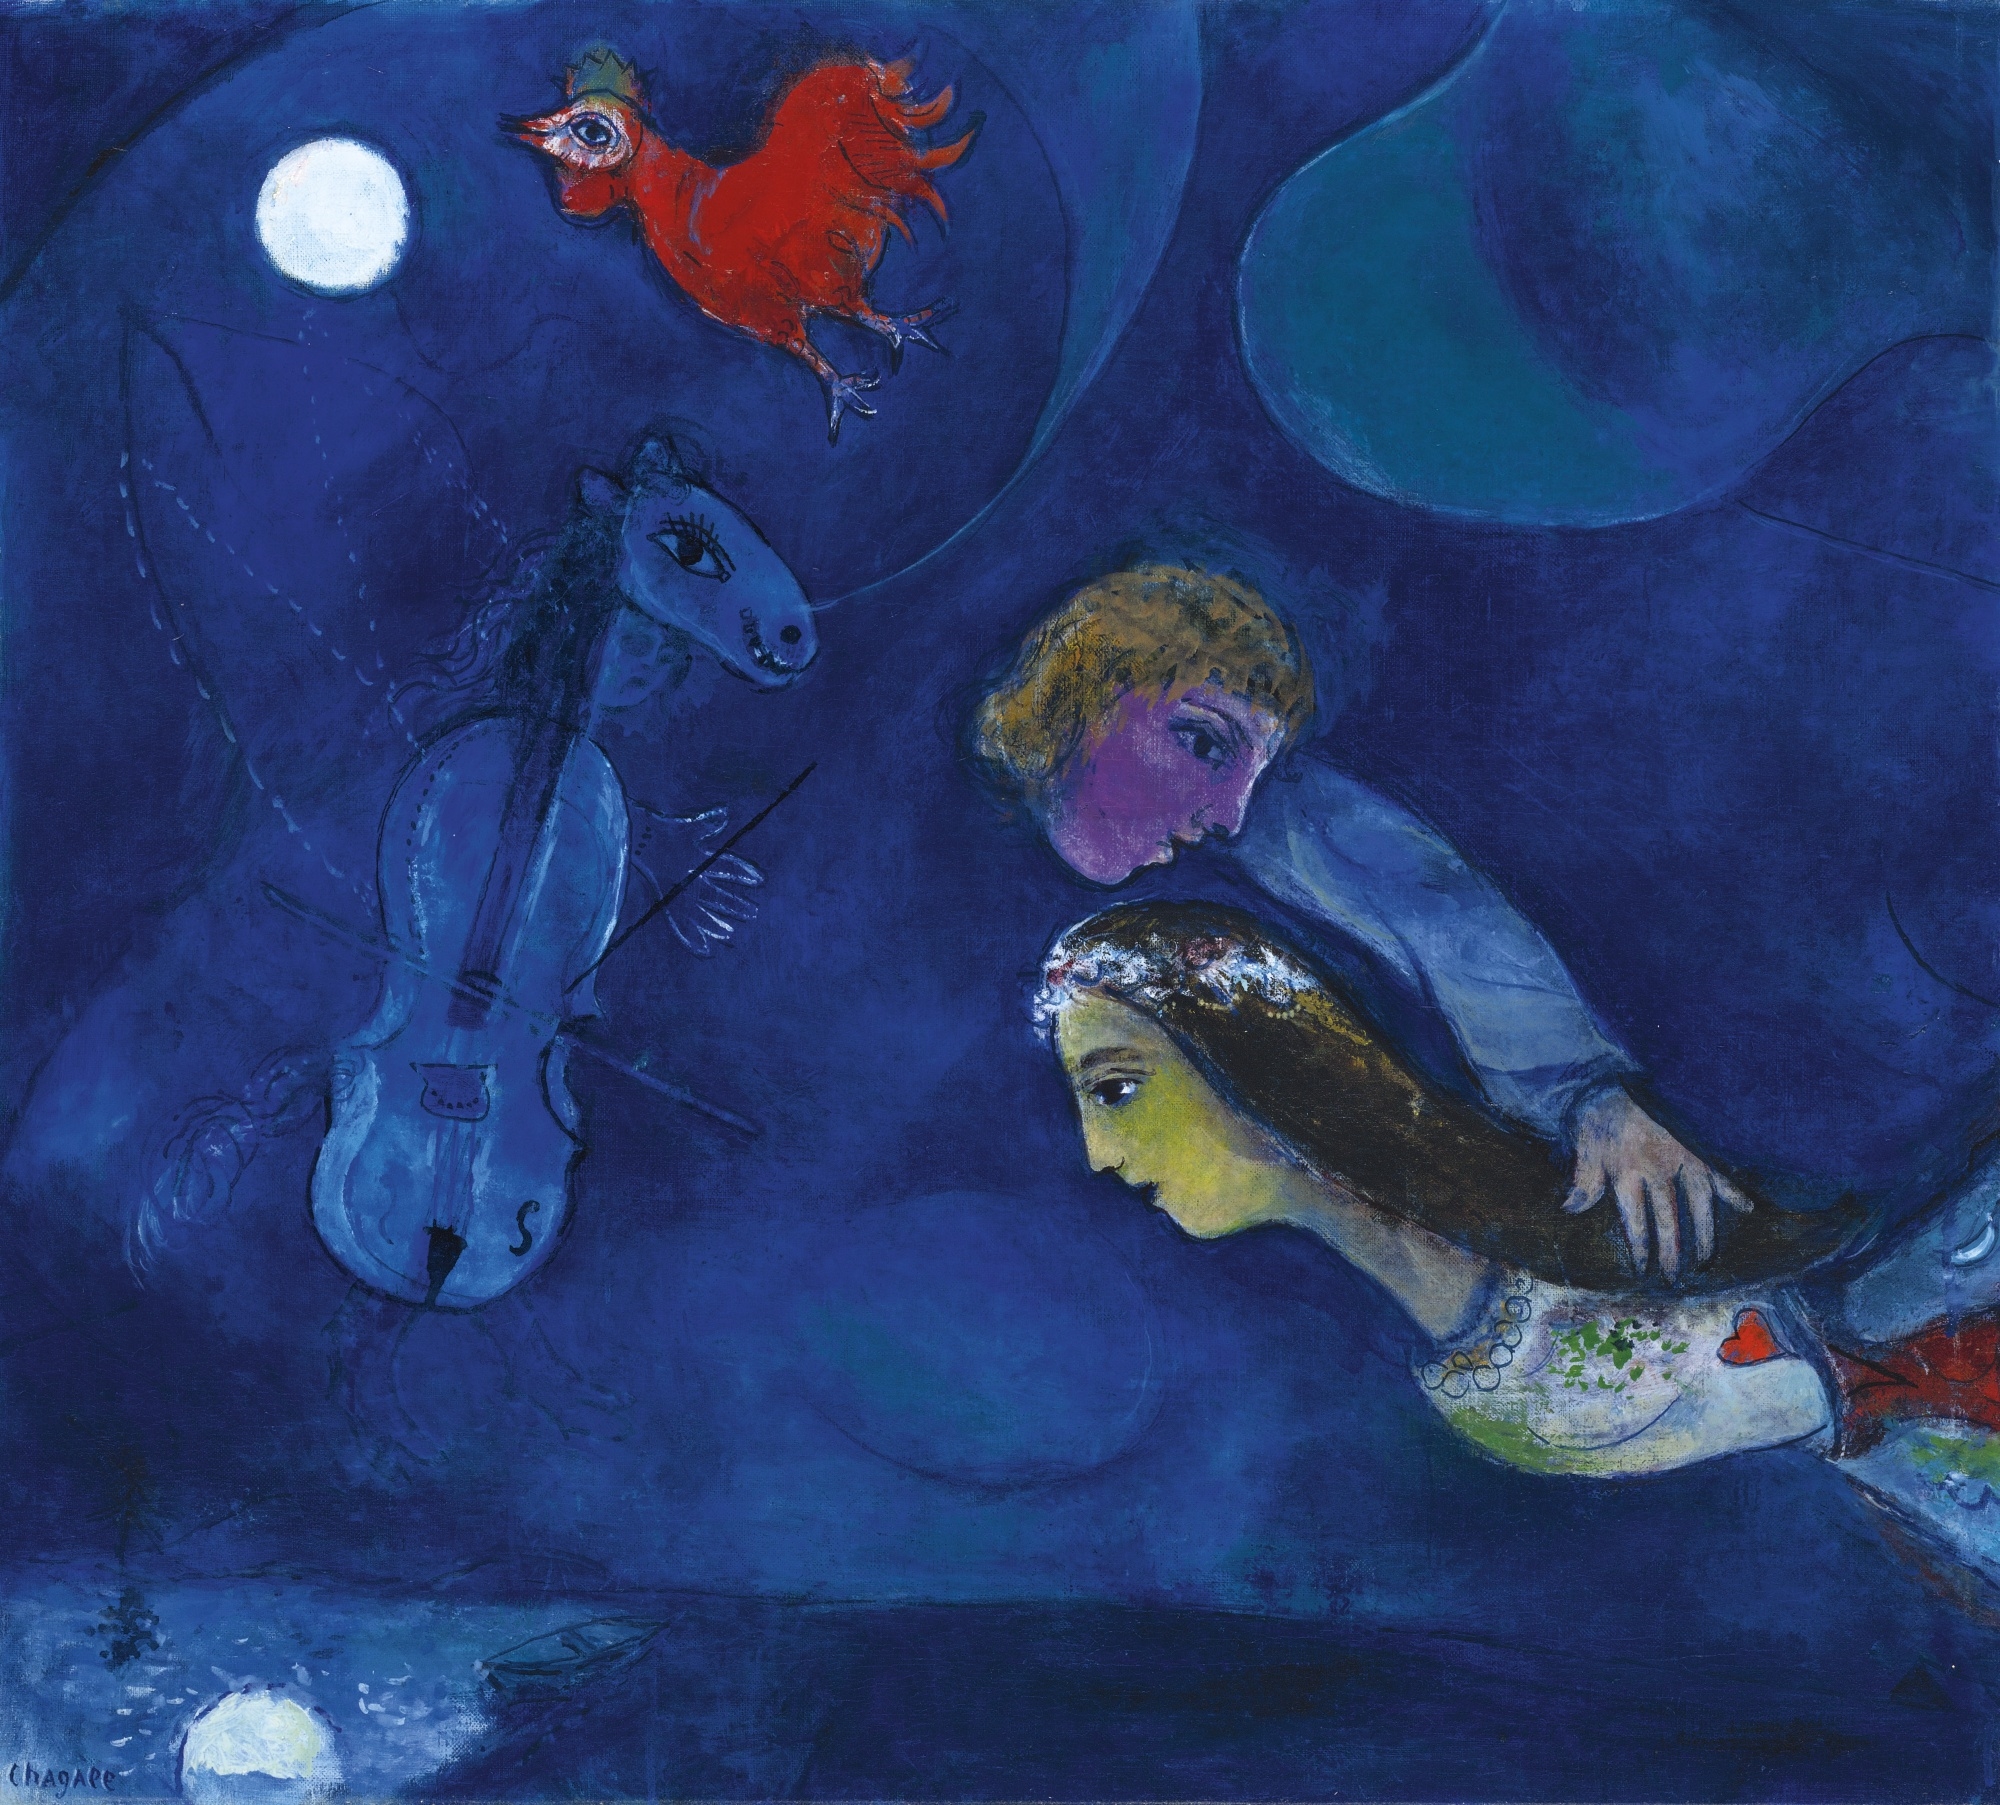 COQ ROUGE DANS LA NUIT by Marc Chagall, 1944